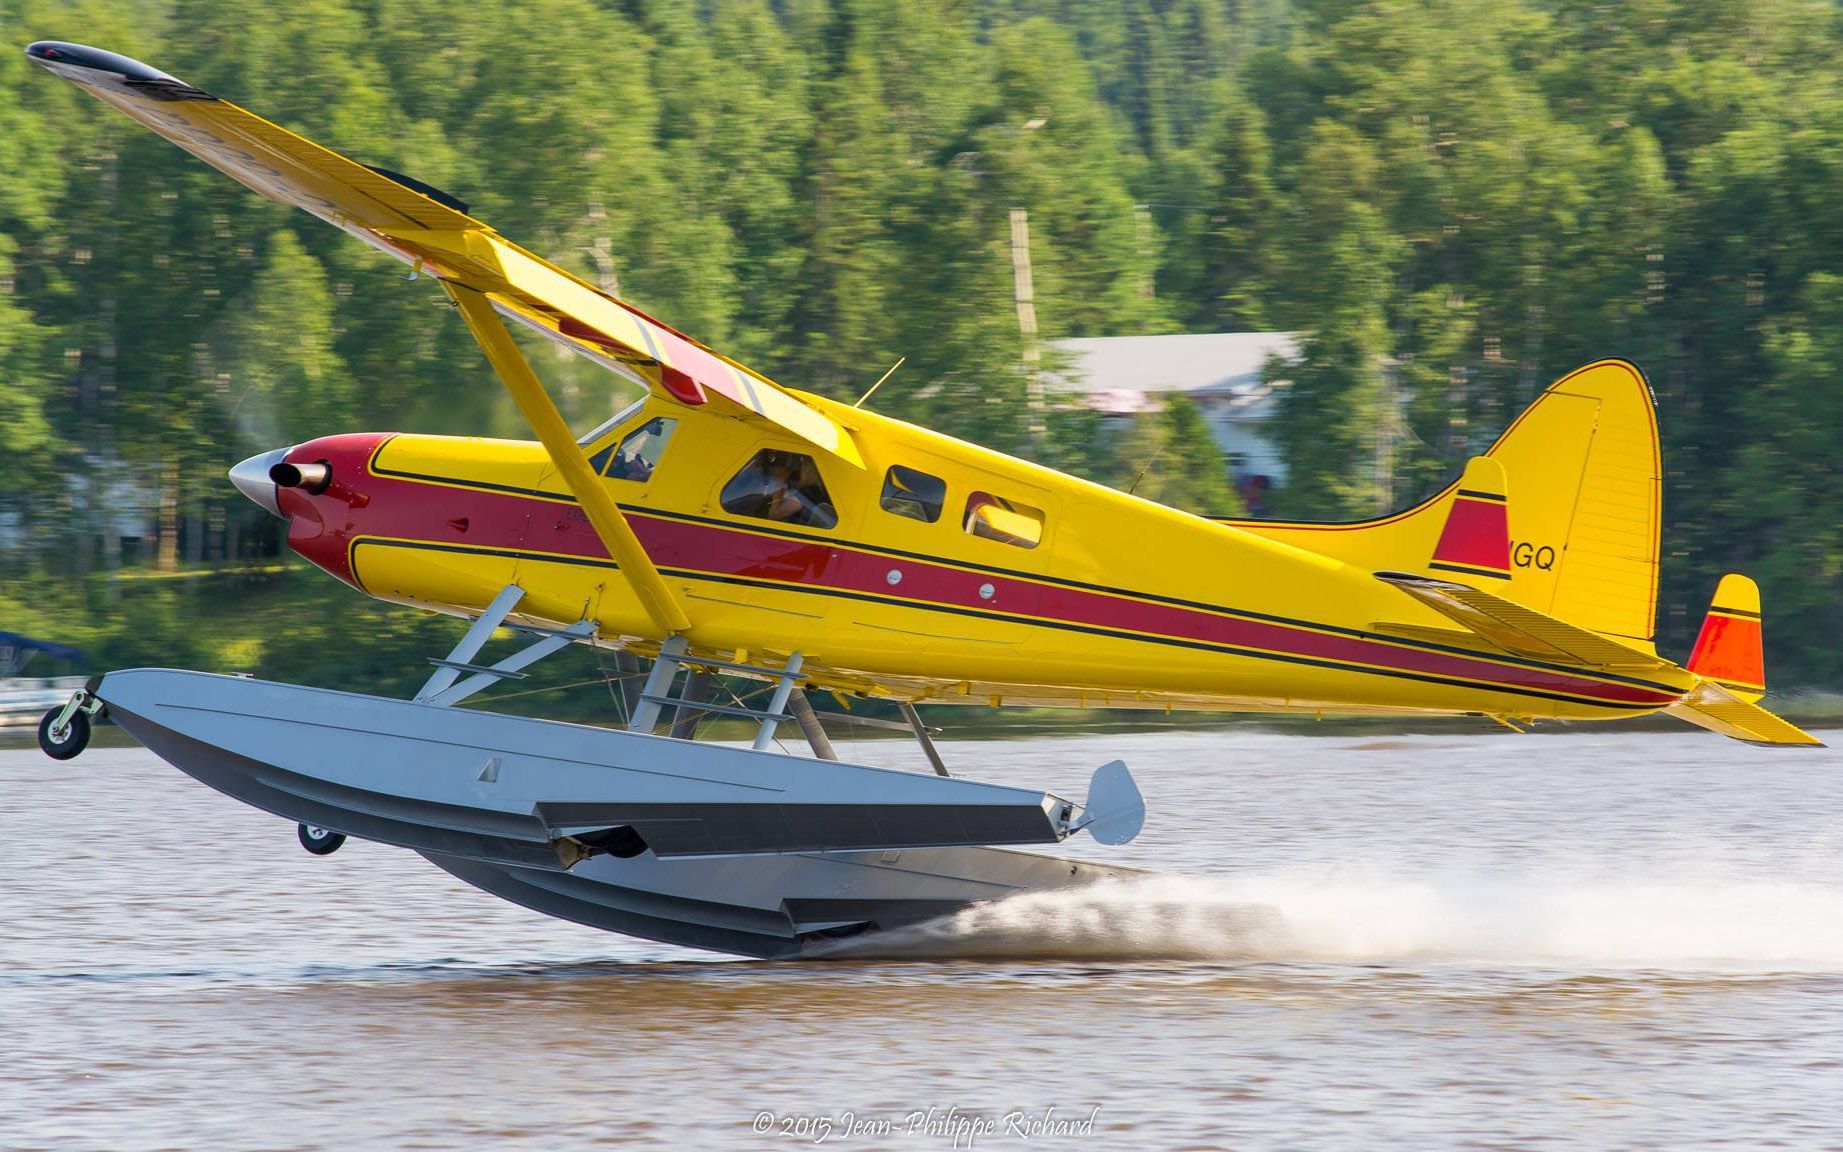 AVD Turbo Beaver landing on water